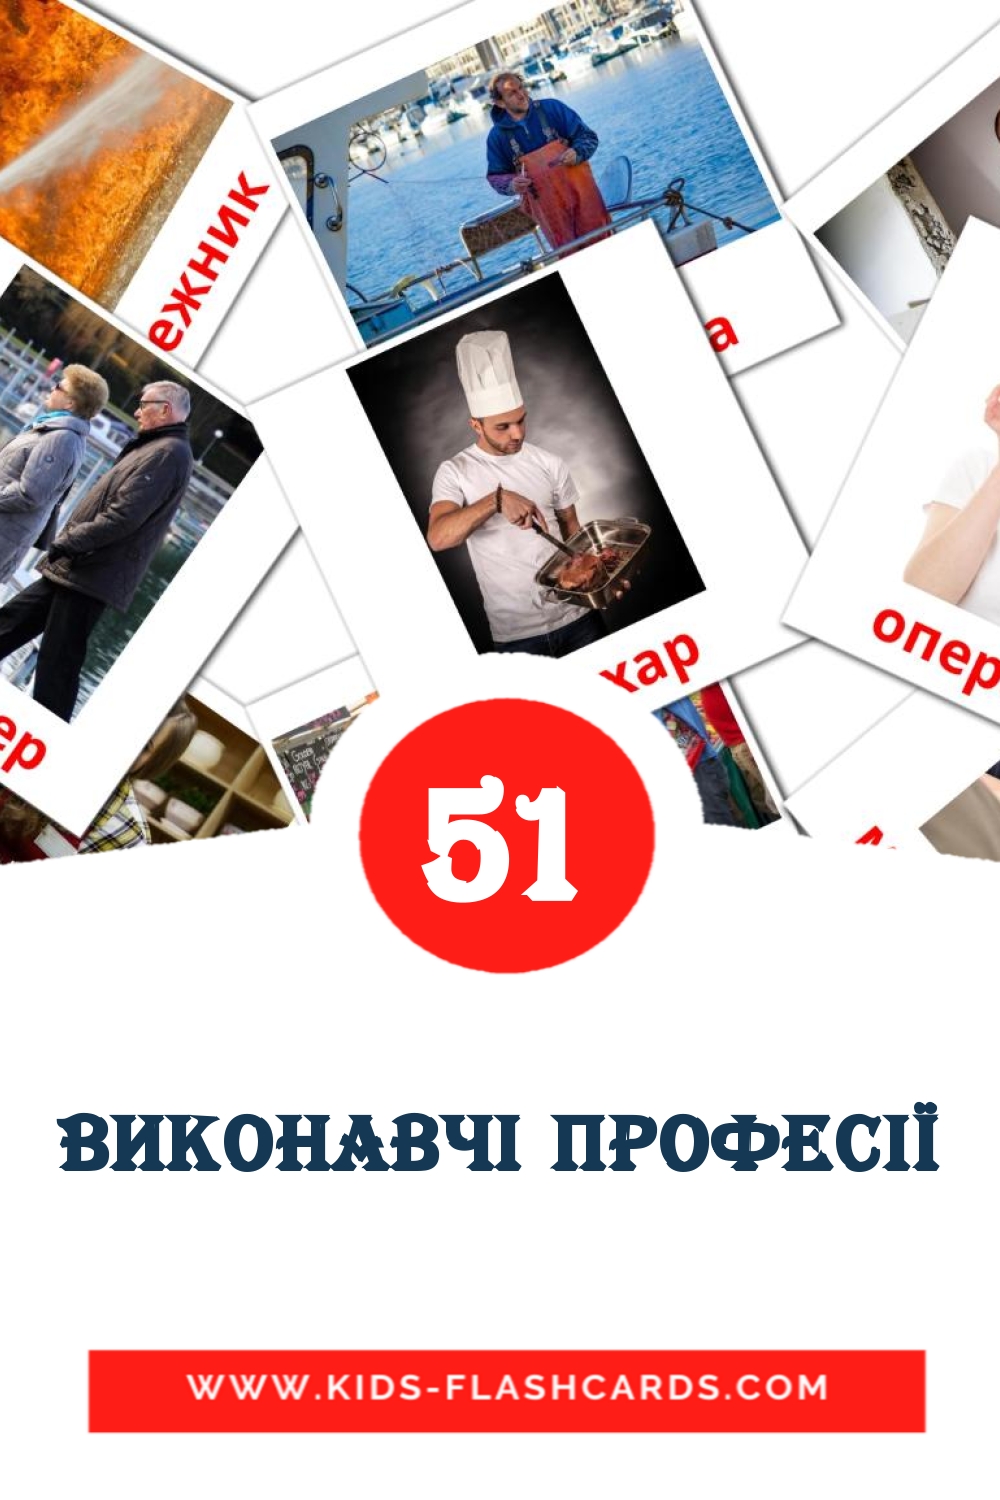 51 Виконавчі професії Bildkarten für den Kindergarten auf Ukrainisch